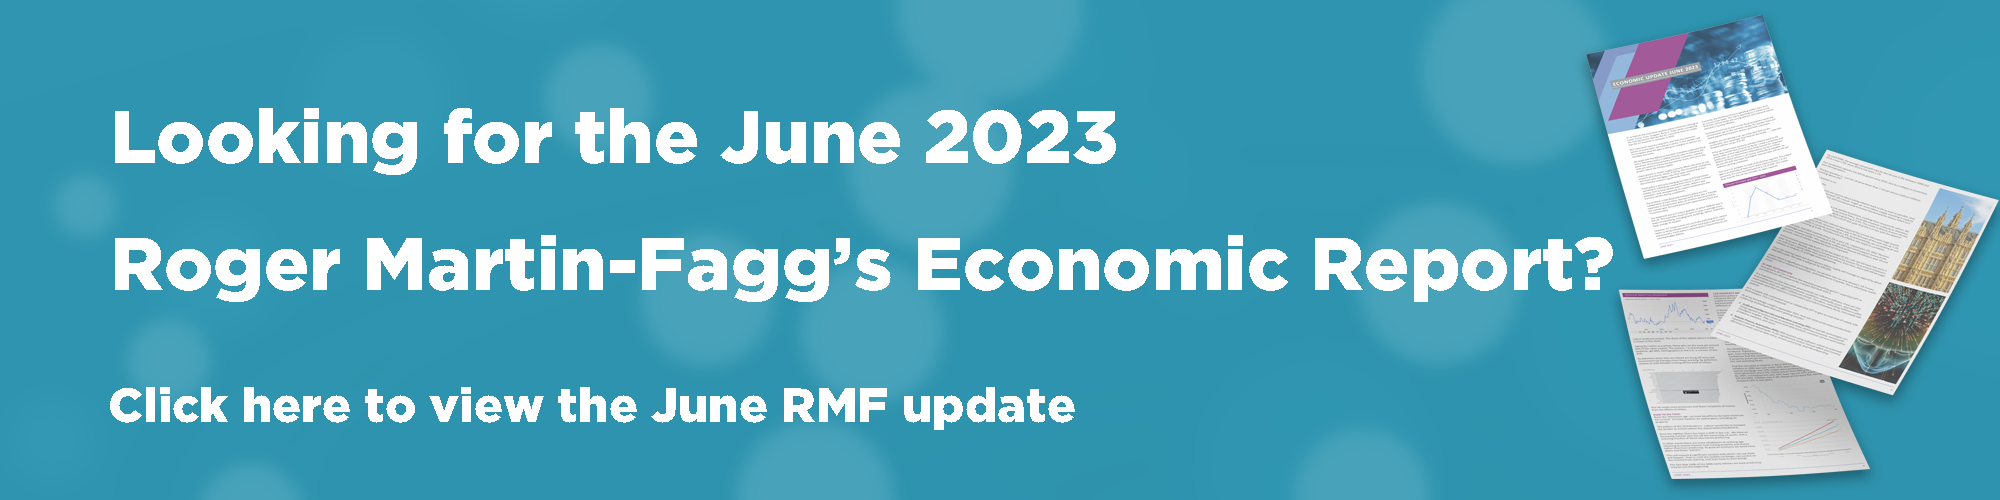 Roger Martin-Fagg June 2023 Economic Report banner